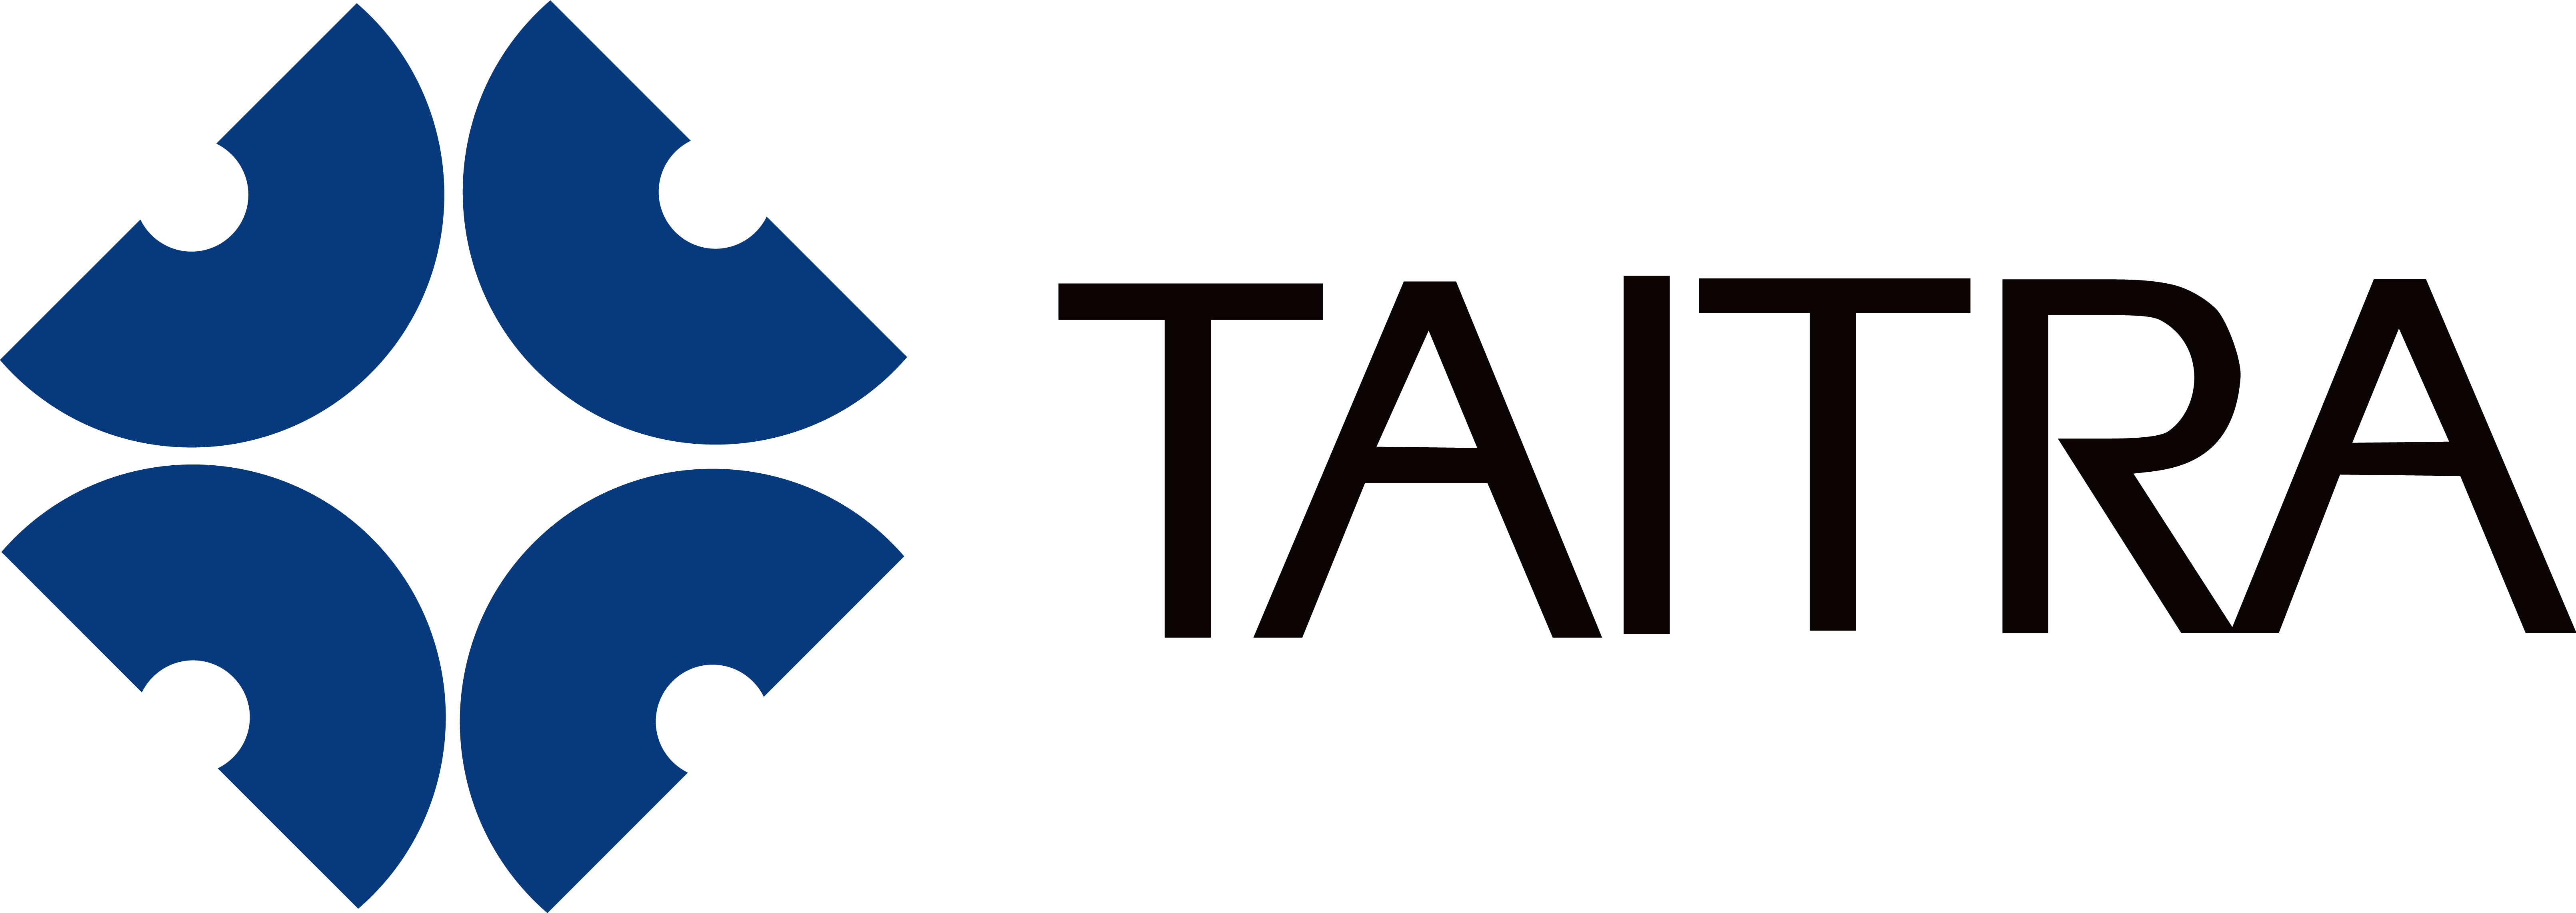 TAITRA_logo